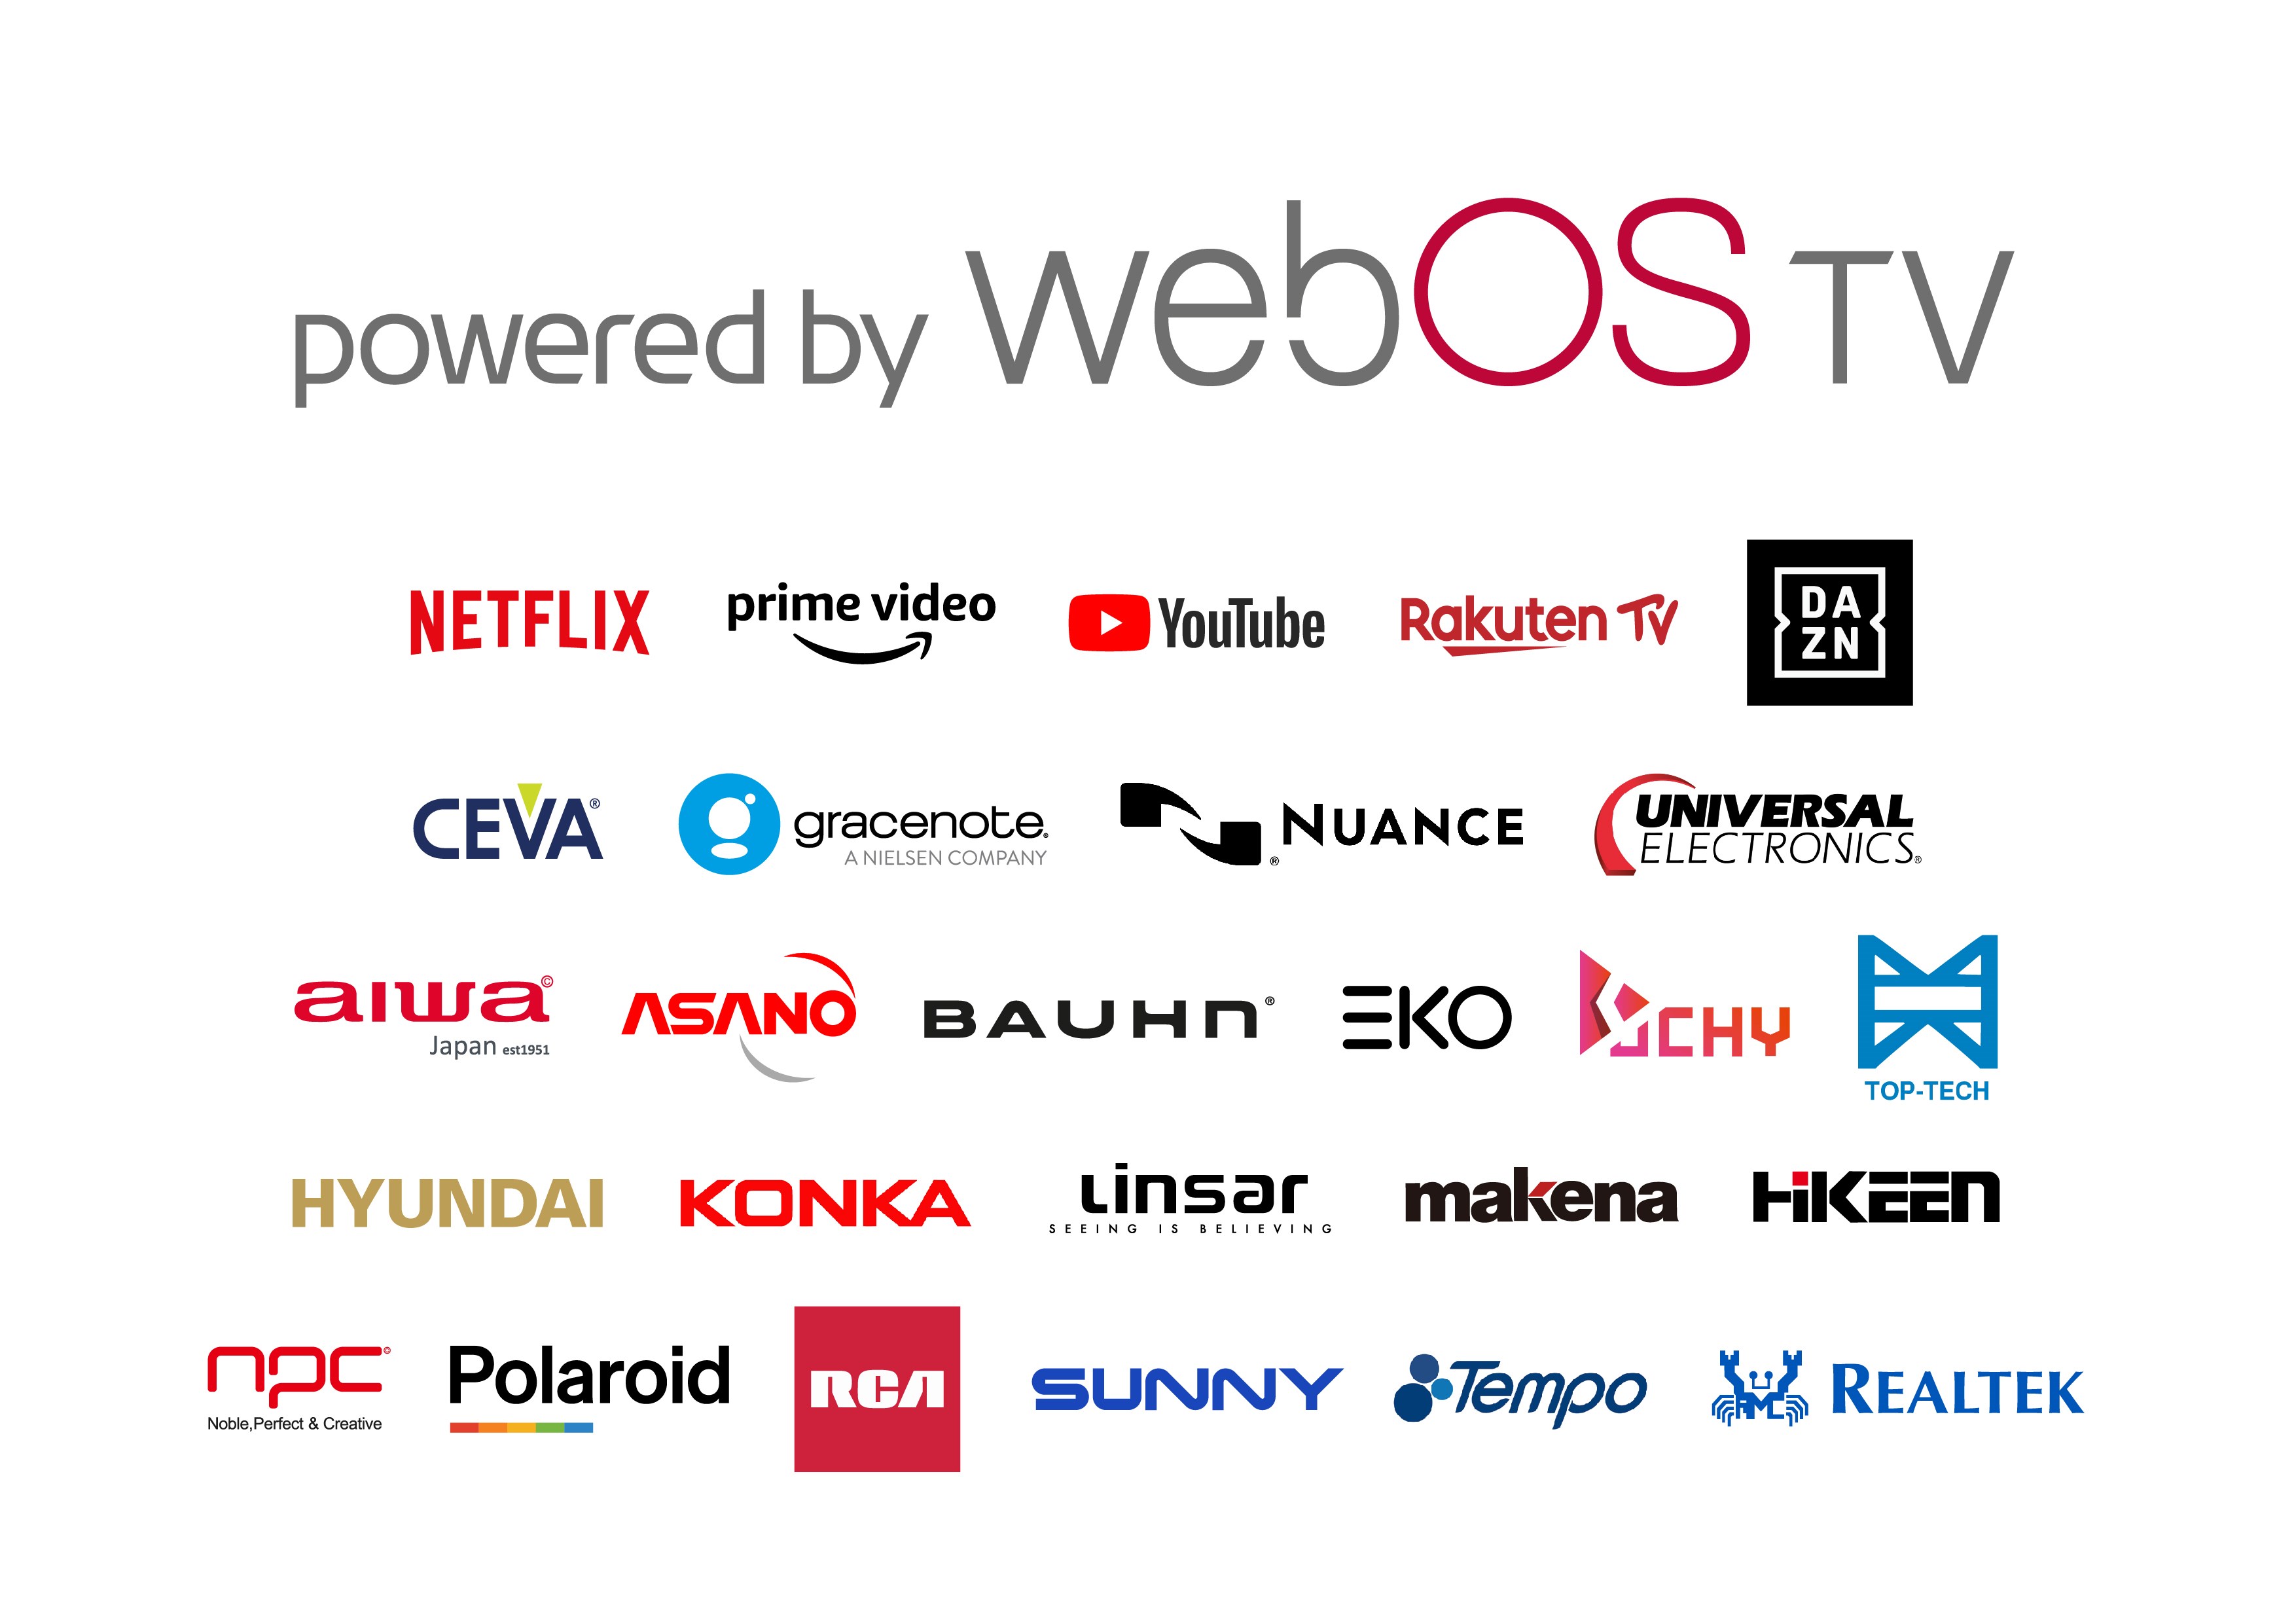 Yerli üretim Sunny TV'lere LG'nin webOS işletim sistemi geliyor